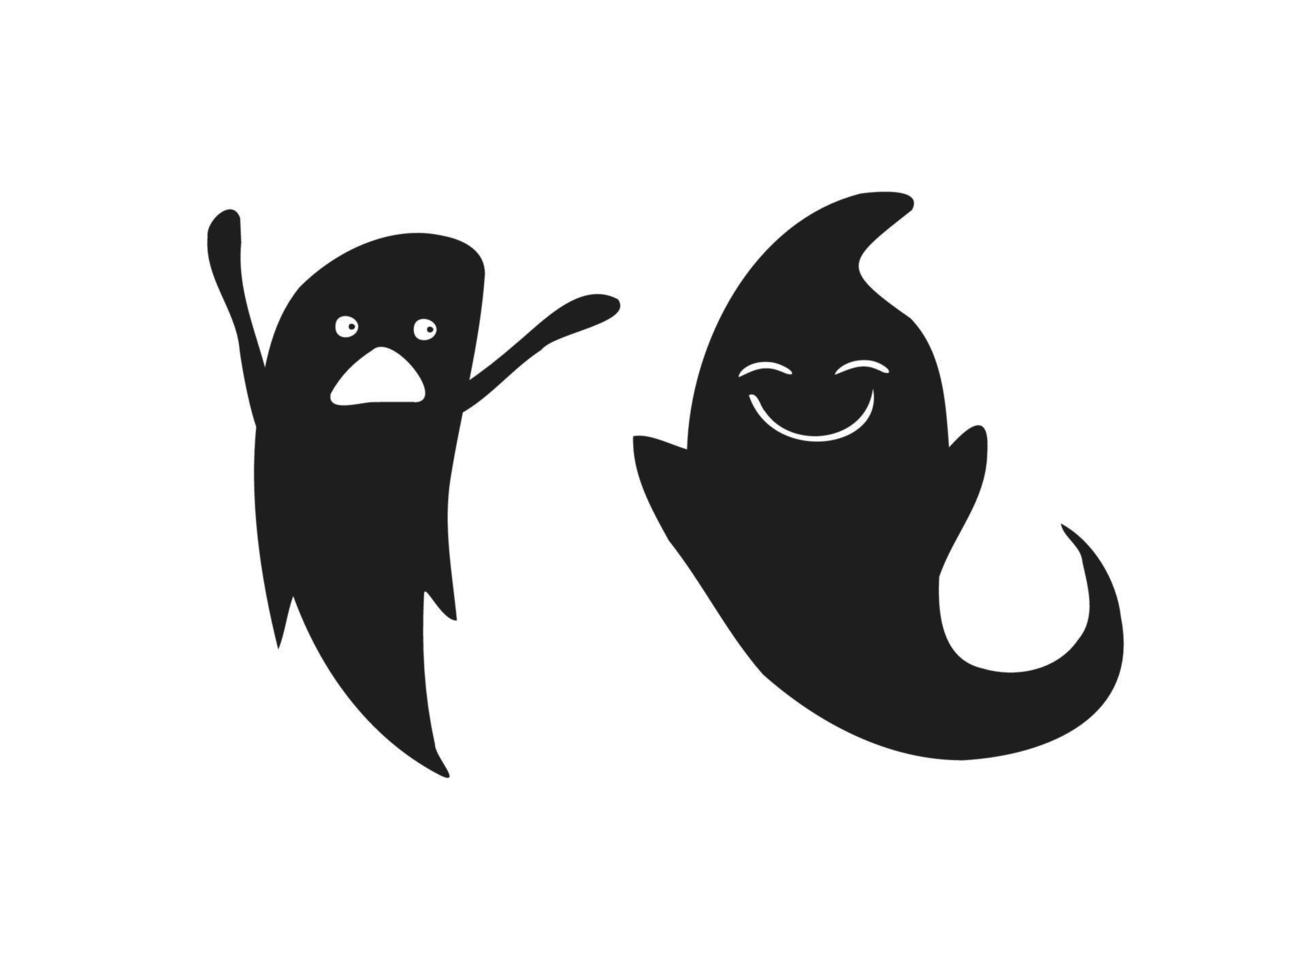 halloween 2022 - 31 octobre. une fête traditionnelle. La charité s'il-vous-plaît. illustration vectorielle dans un style doodle dessiné à la main. ensemble de silhouettes de fantômes mignons. vecteur